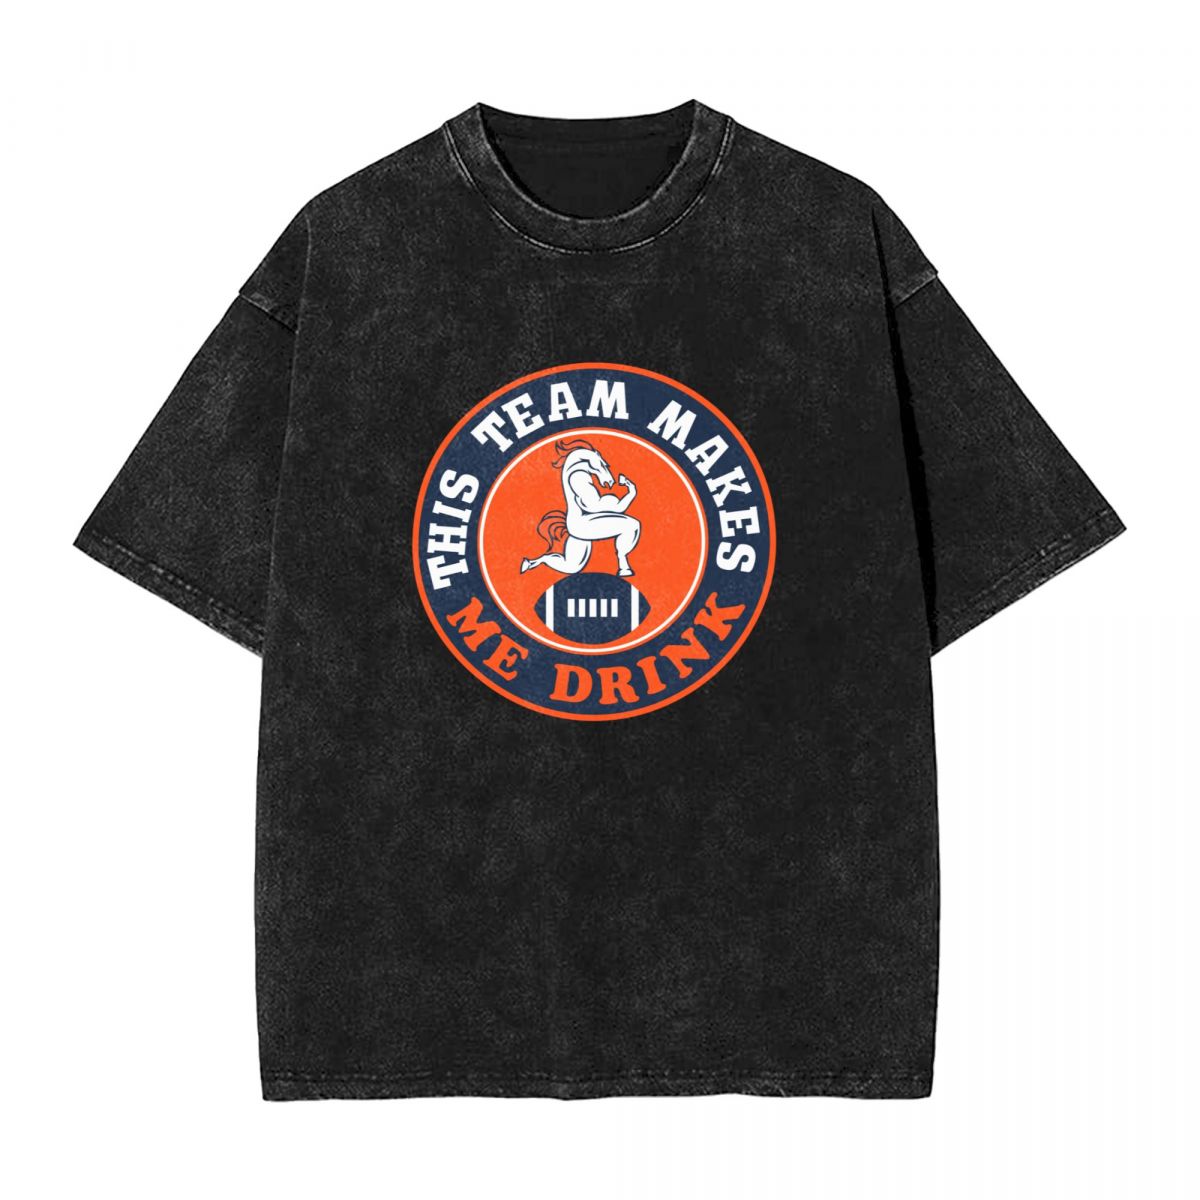 Denver Broncos This Team Makes Me Drink Vintage Oversized T-Shirt Men's